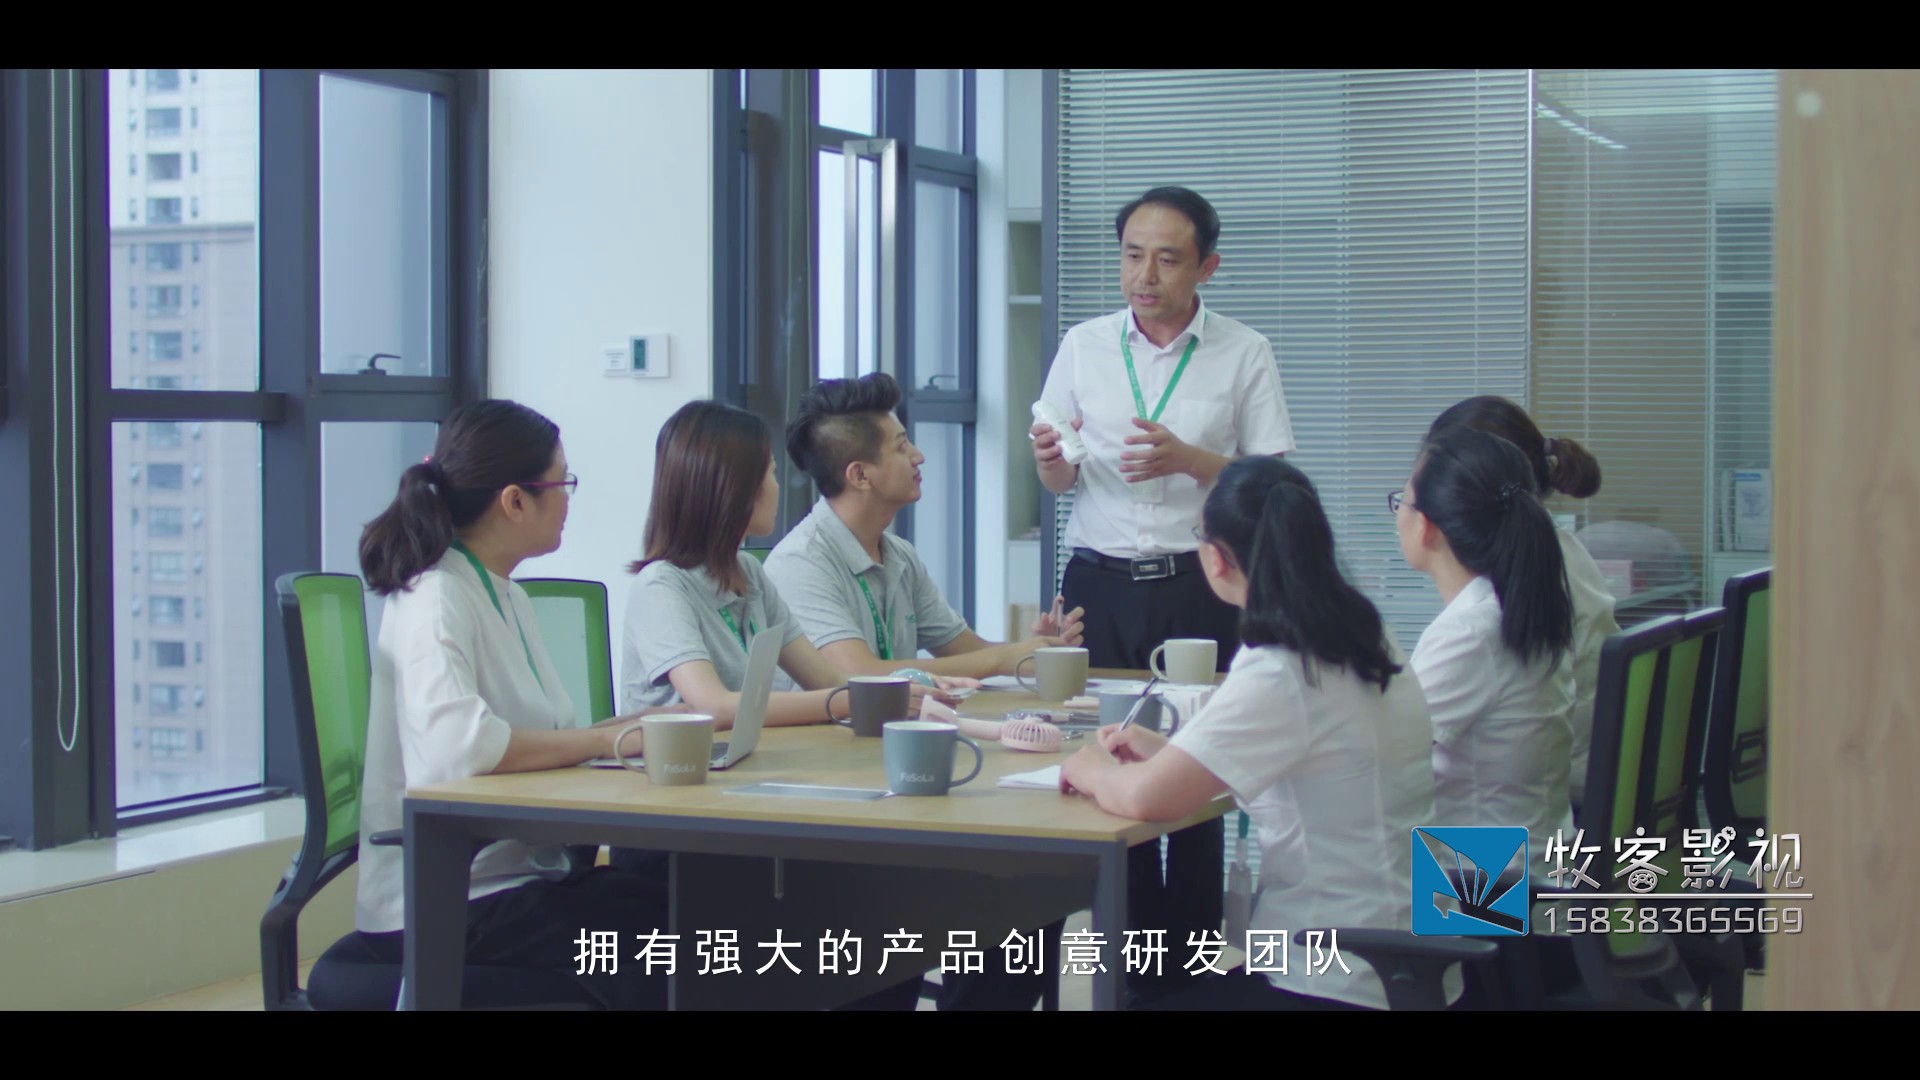 郑州宣传片制作公司：办公家具公司拍摄宣传片关键要点